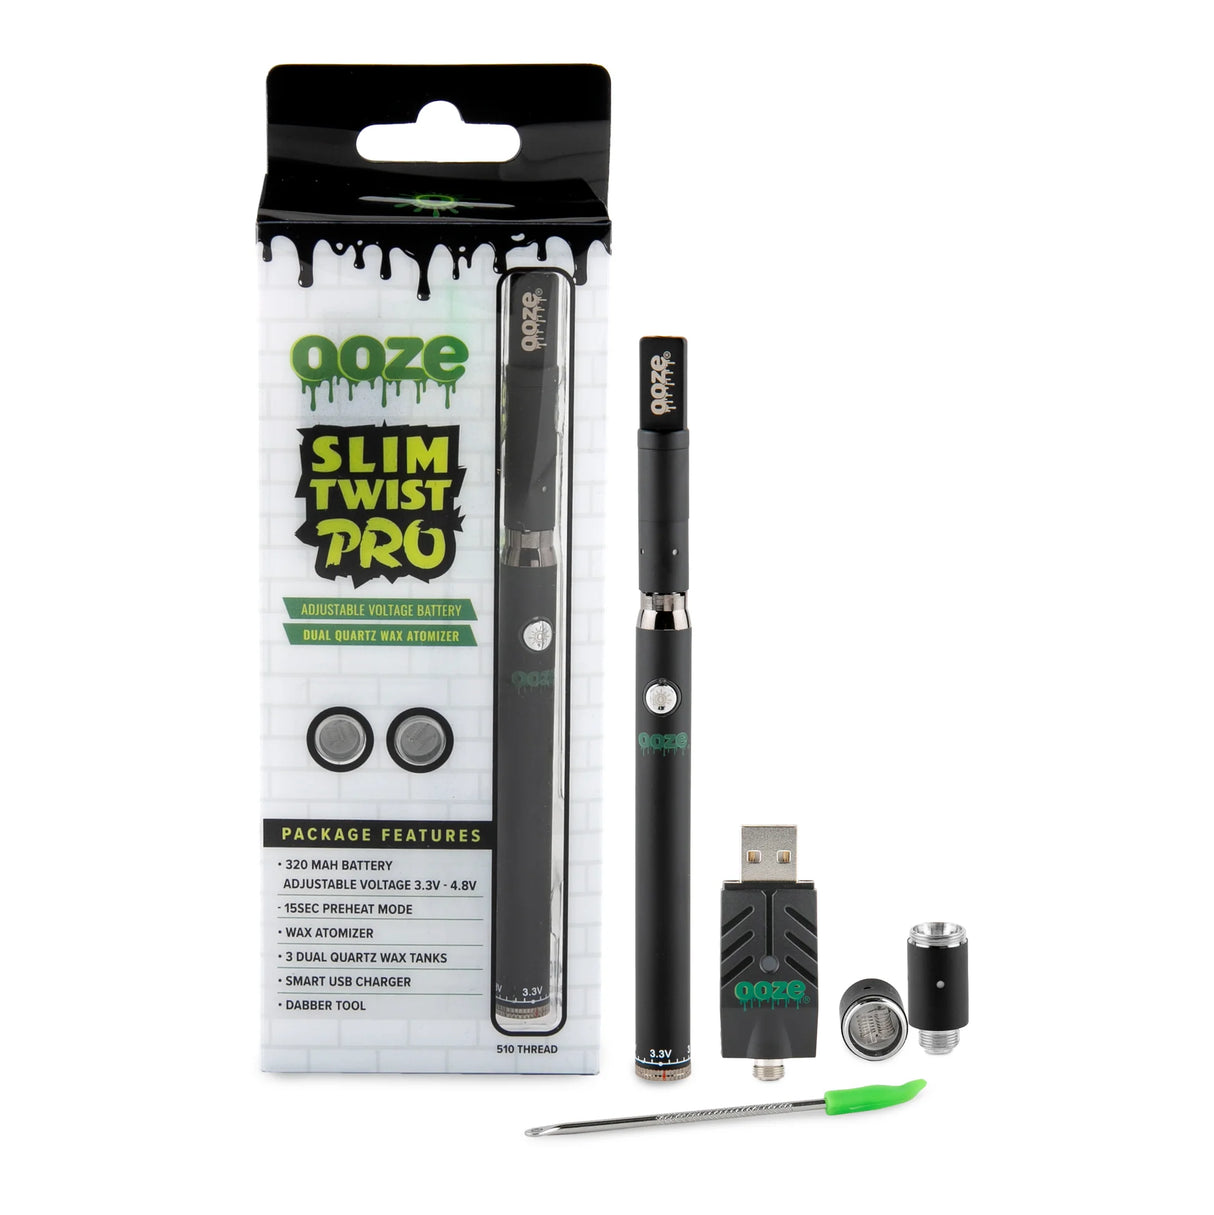 Ooze Slim Twist Pro 320mAh Wax Pen - Black